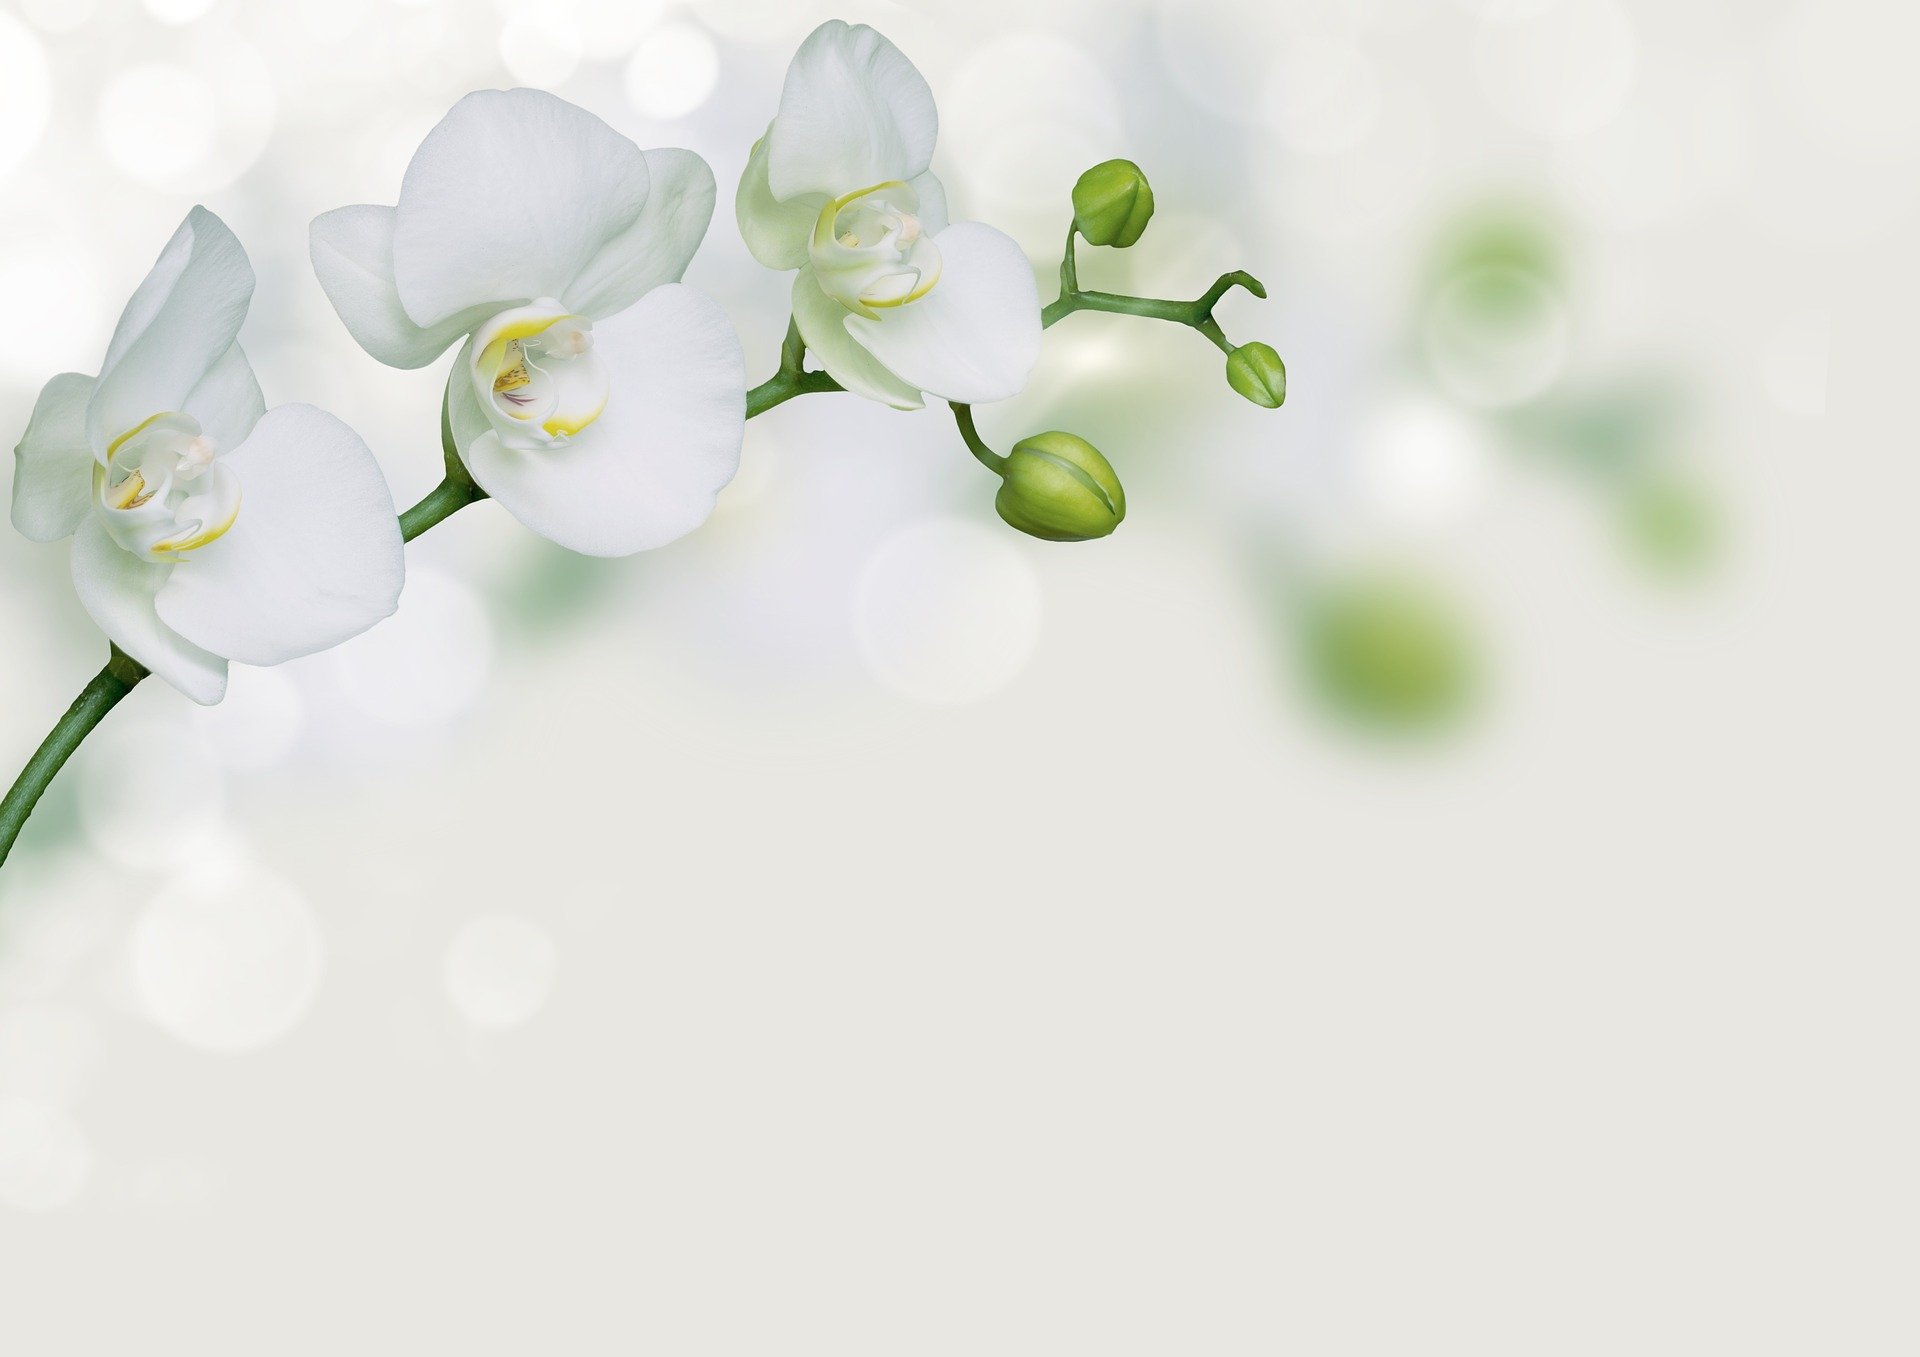 Hình nền đẹp cho PowerPoint với những đóa hoa lan  Flower background  wallpaper Flower backgrounds Poster background design